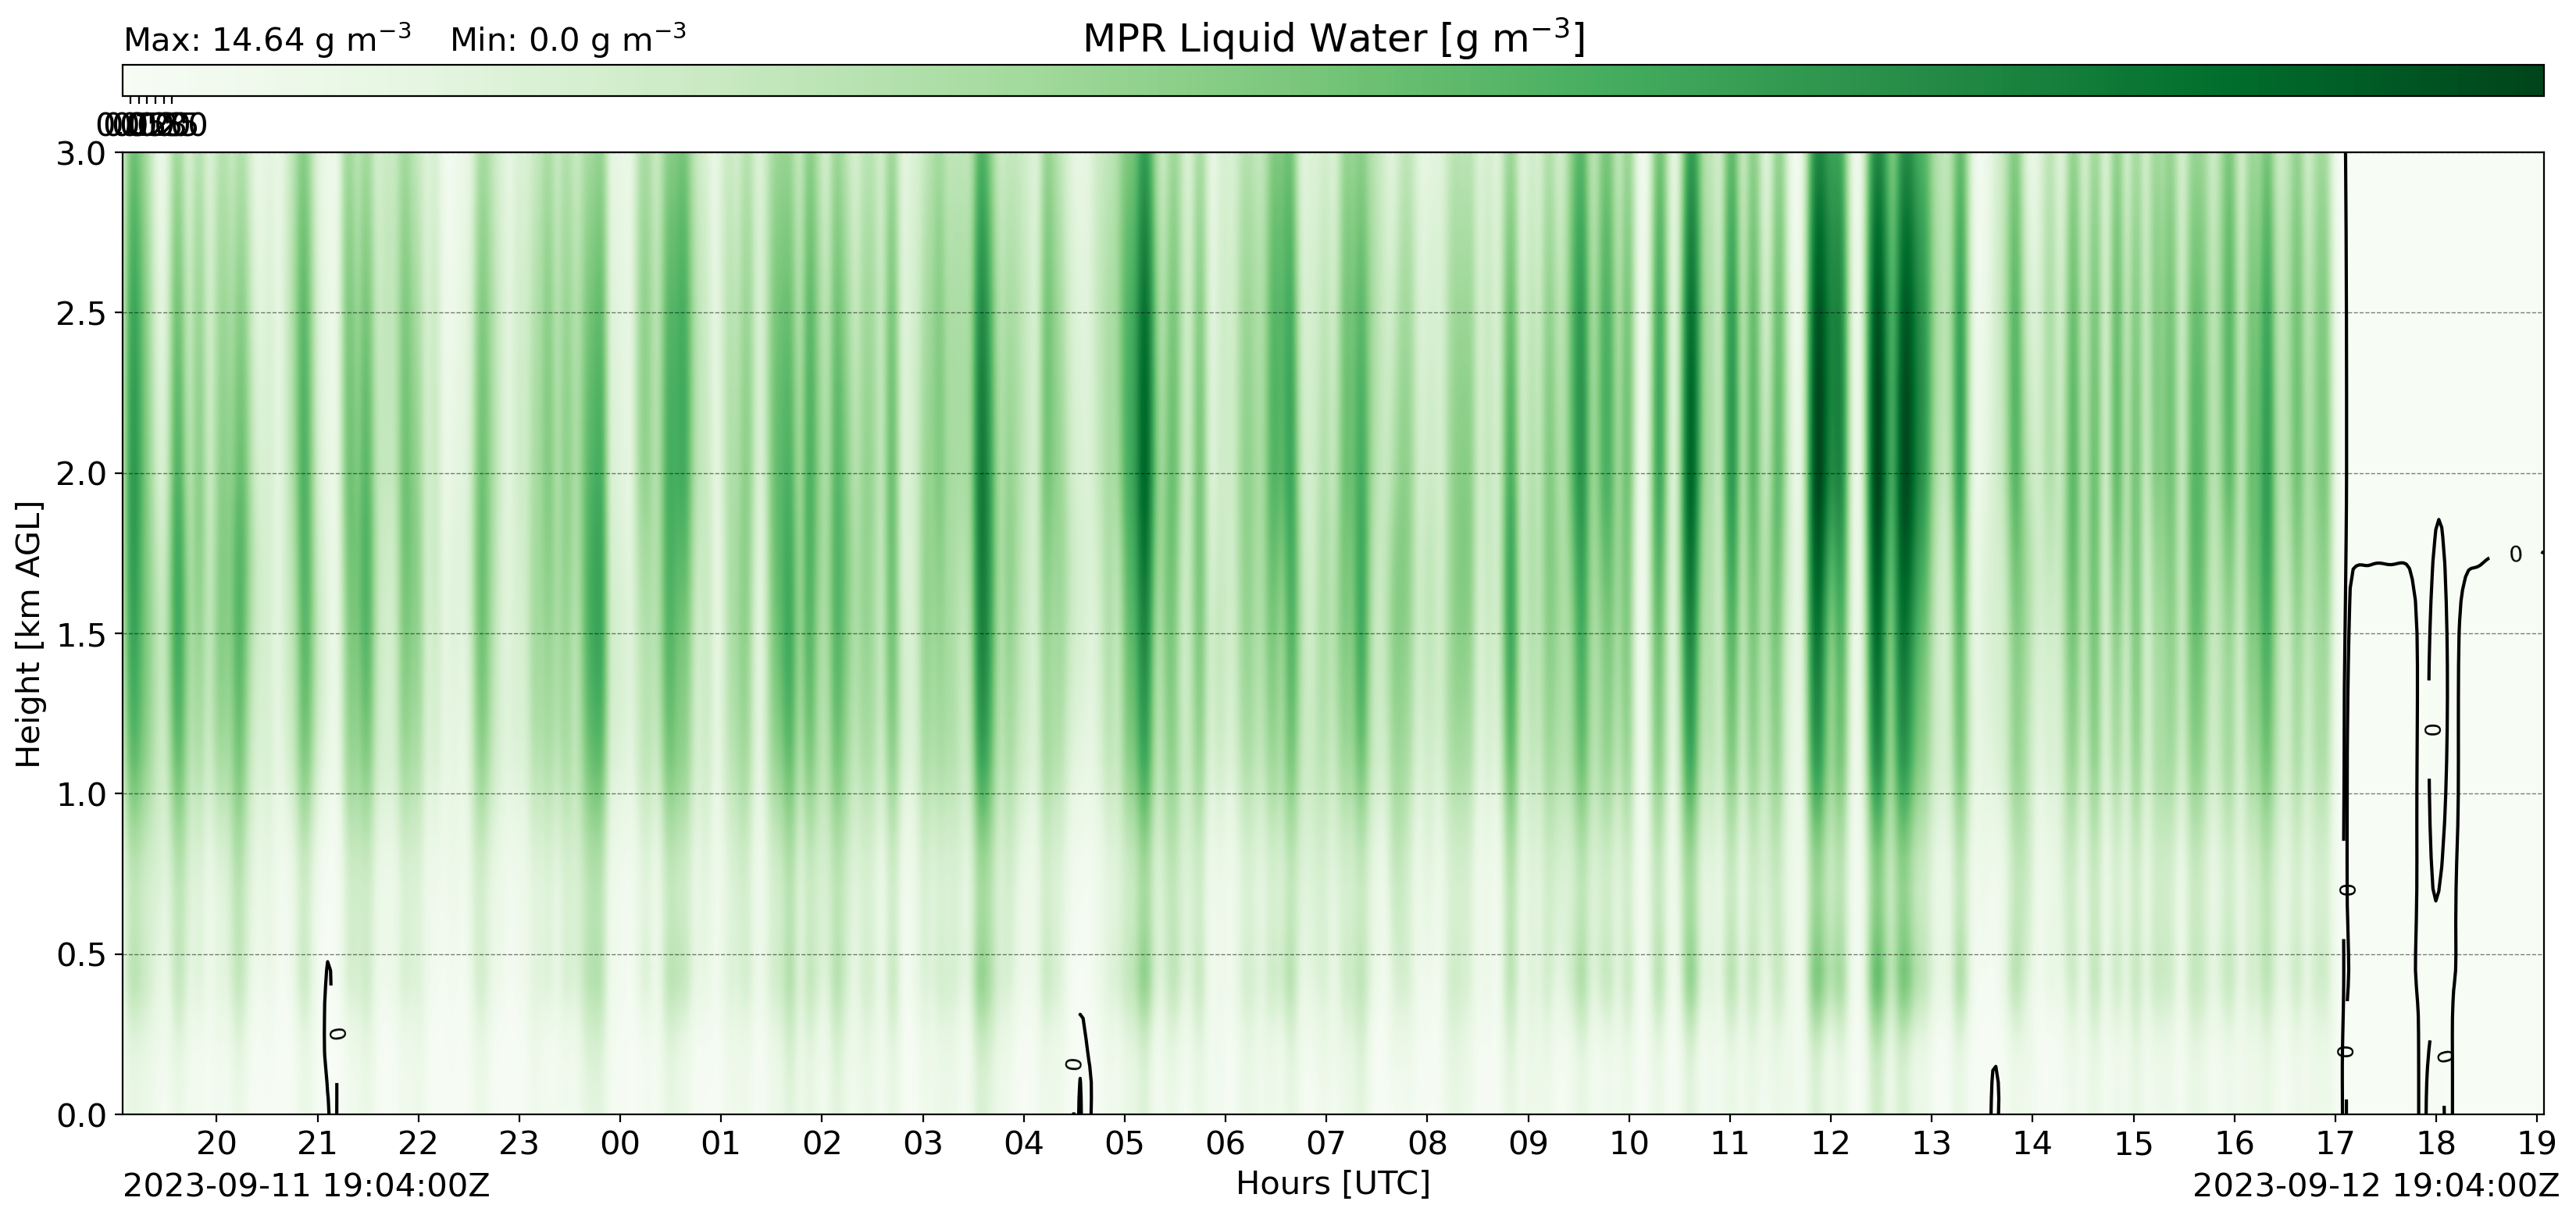 MPR Liquid Water